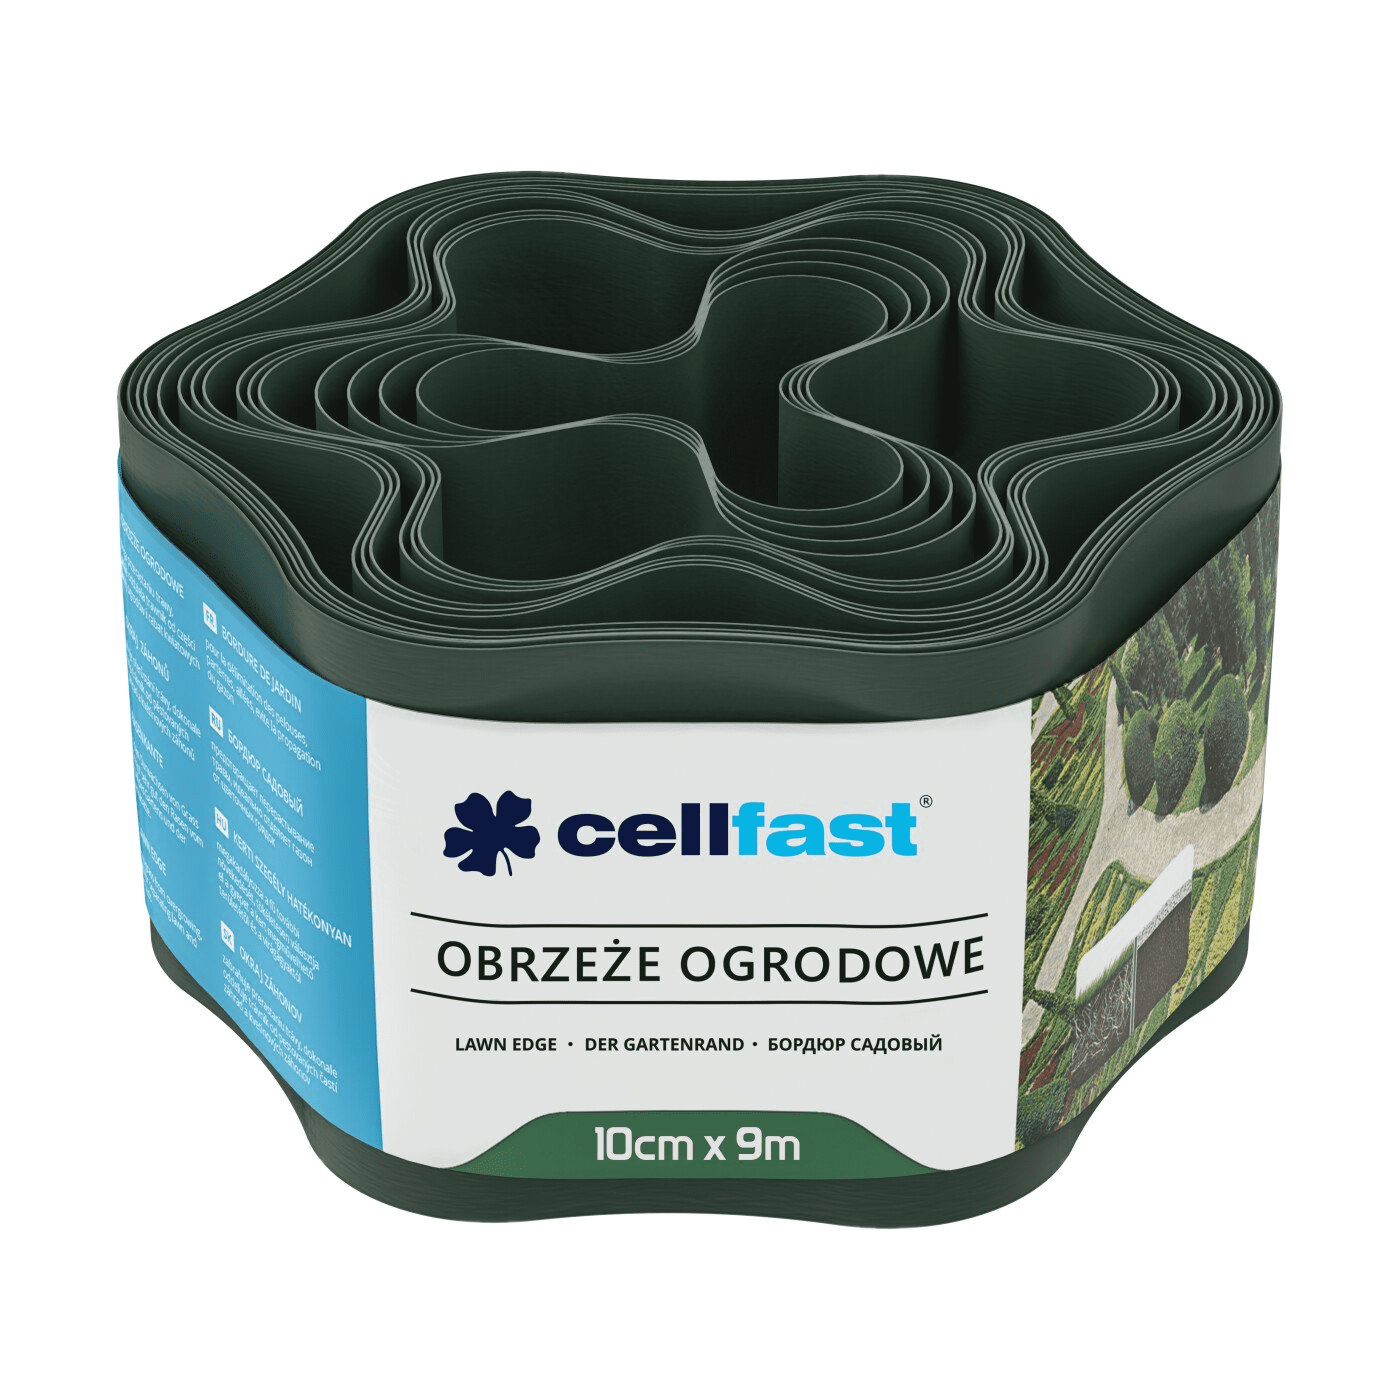 Cellfast Obrzeże Ogrodnicze 10cm x 9m Ciemna Zieleń